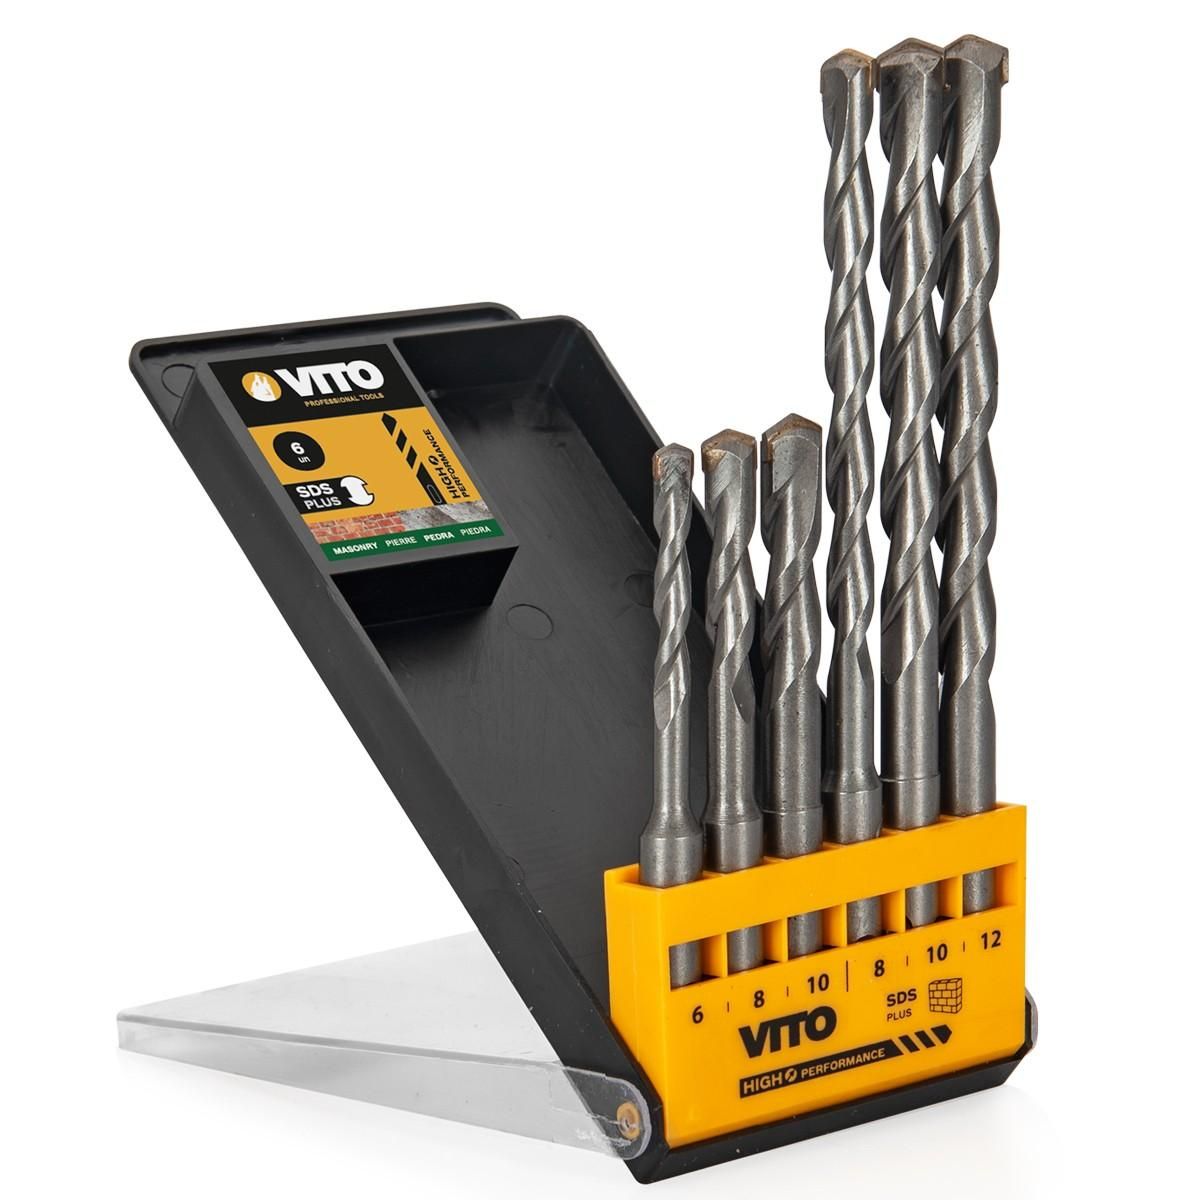 VITO Pro-Power Forets PIERRE VITO SDS PLUS Coffret de 6 pièces Diam 6, 8, 10, 12 mm